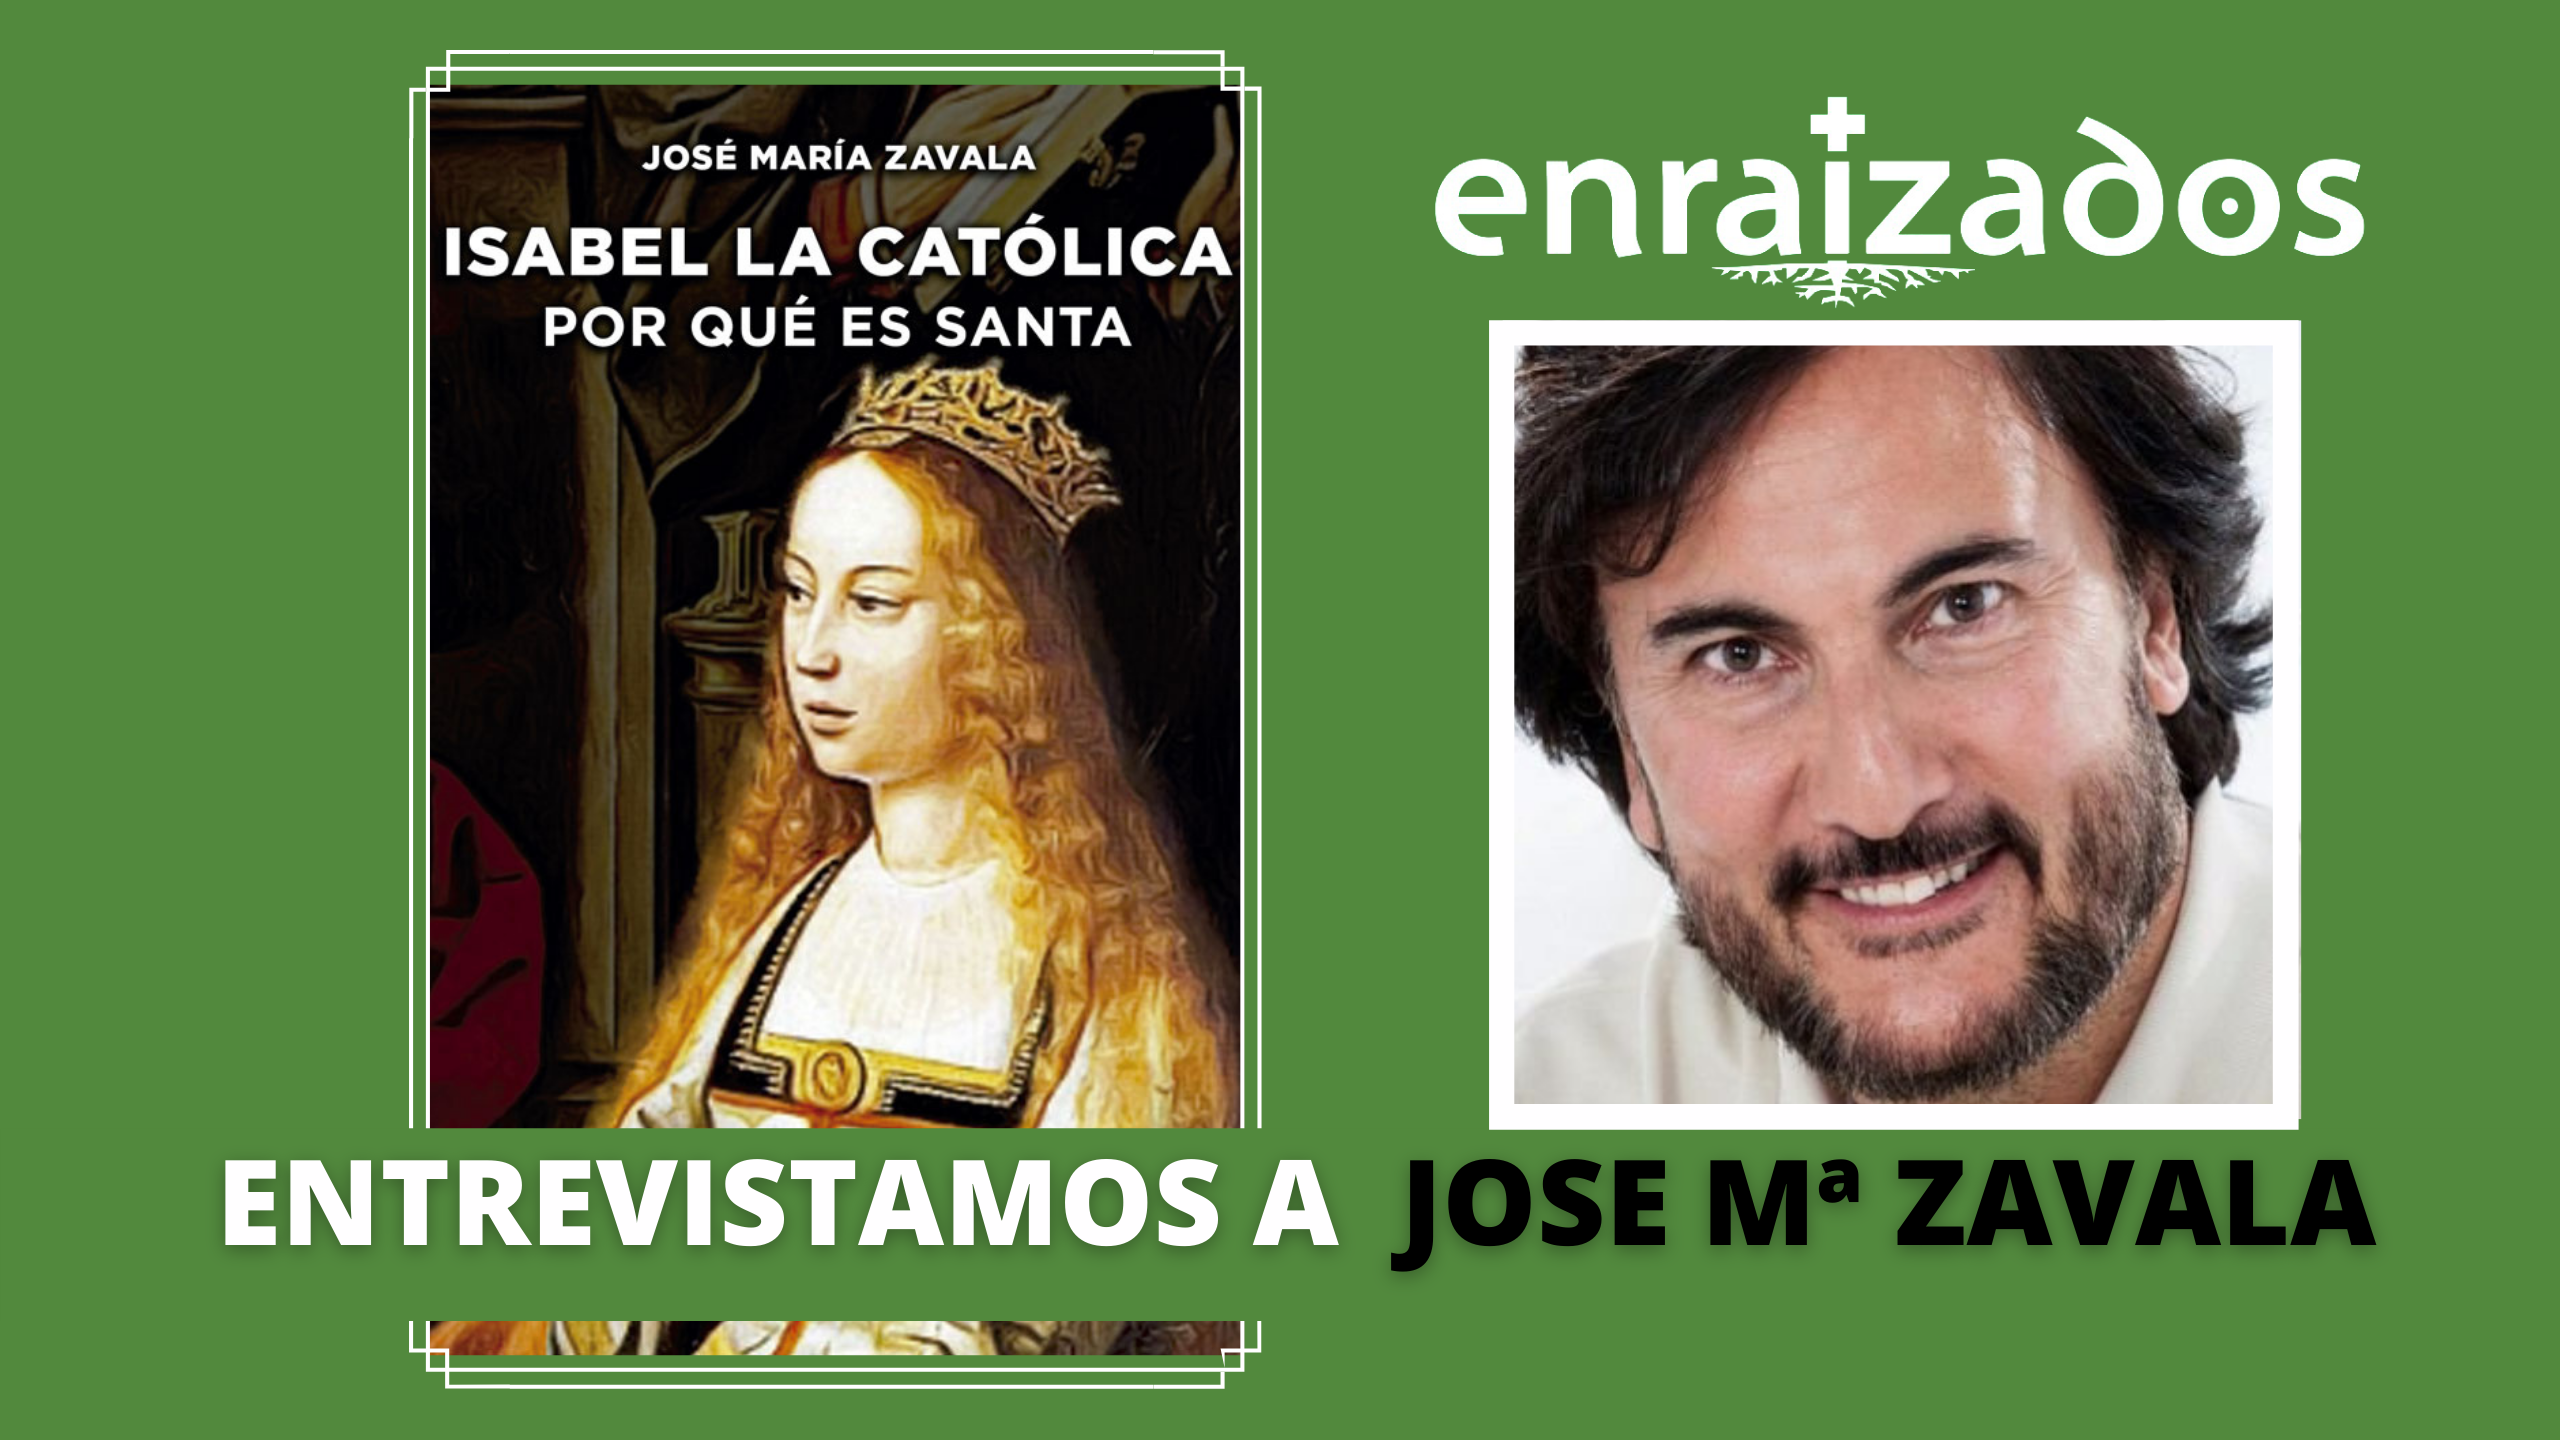 ¿Por qué es santa la reina Isabel la Católica?: Entrevistamos a José María Zavala